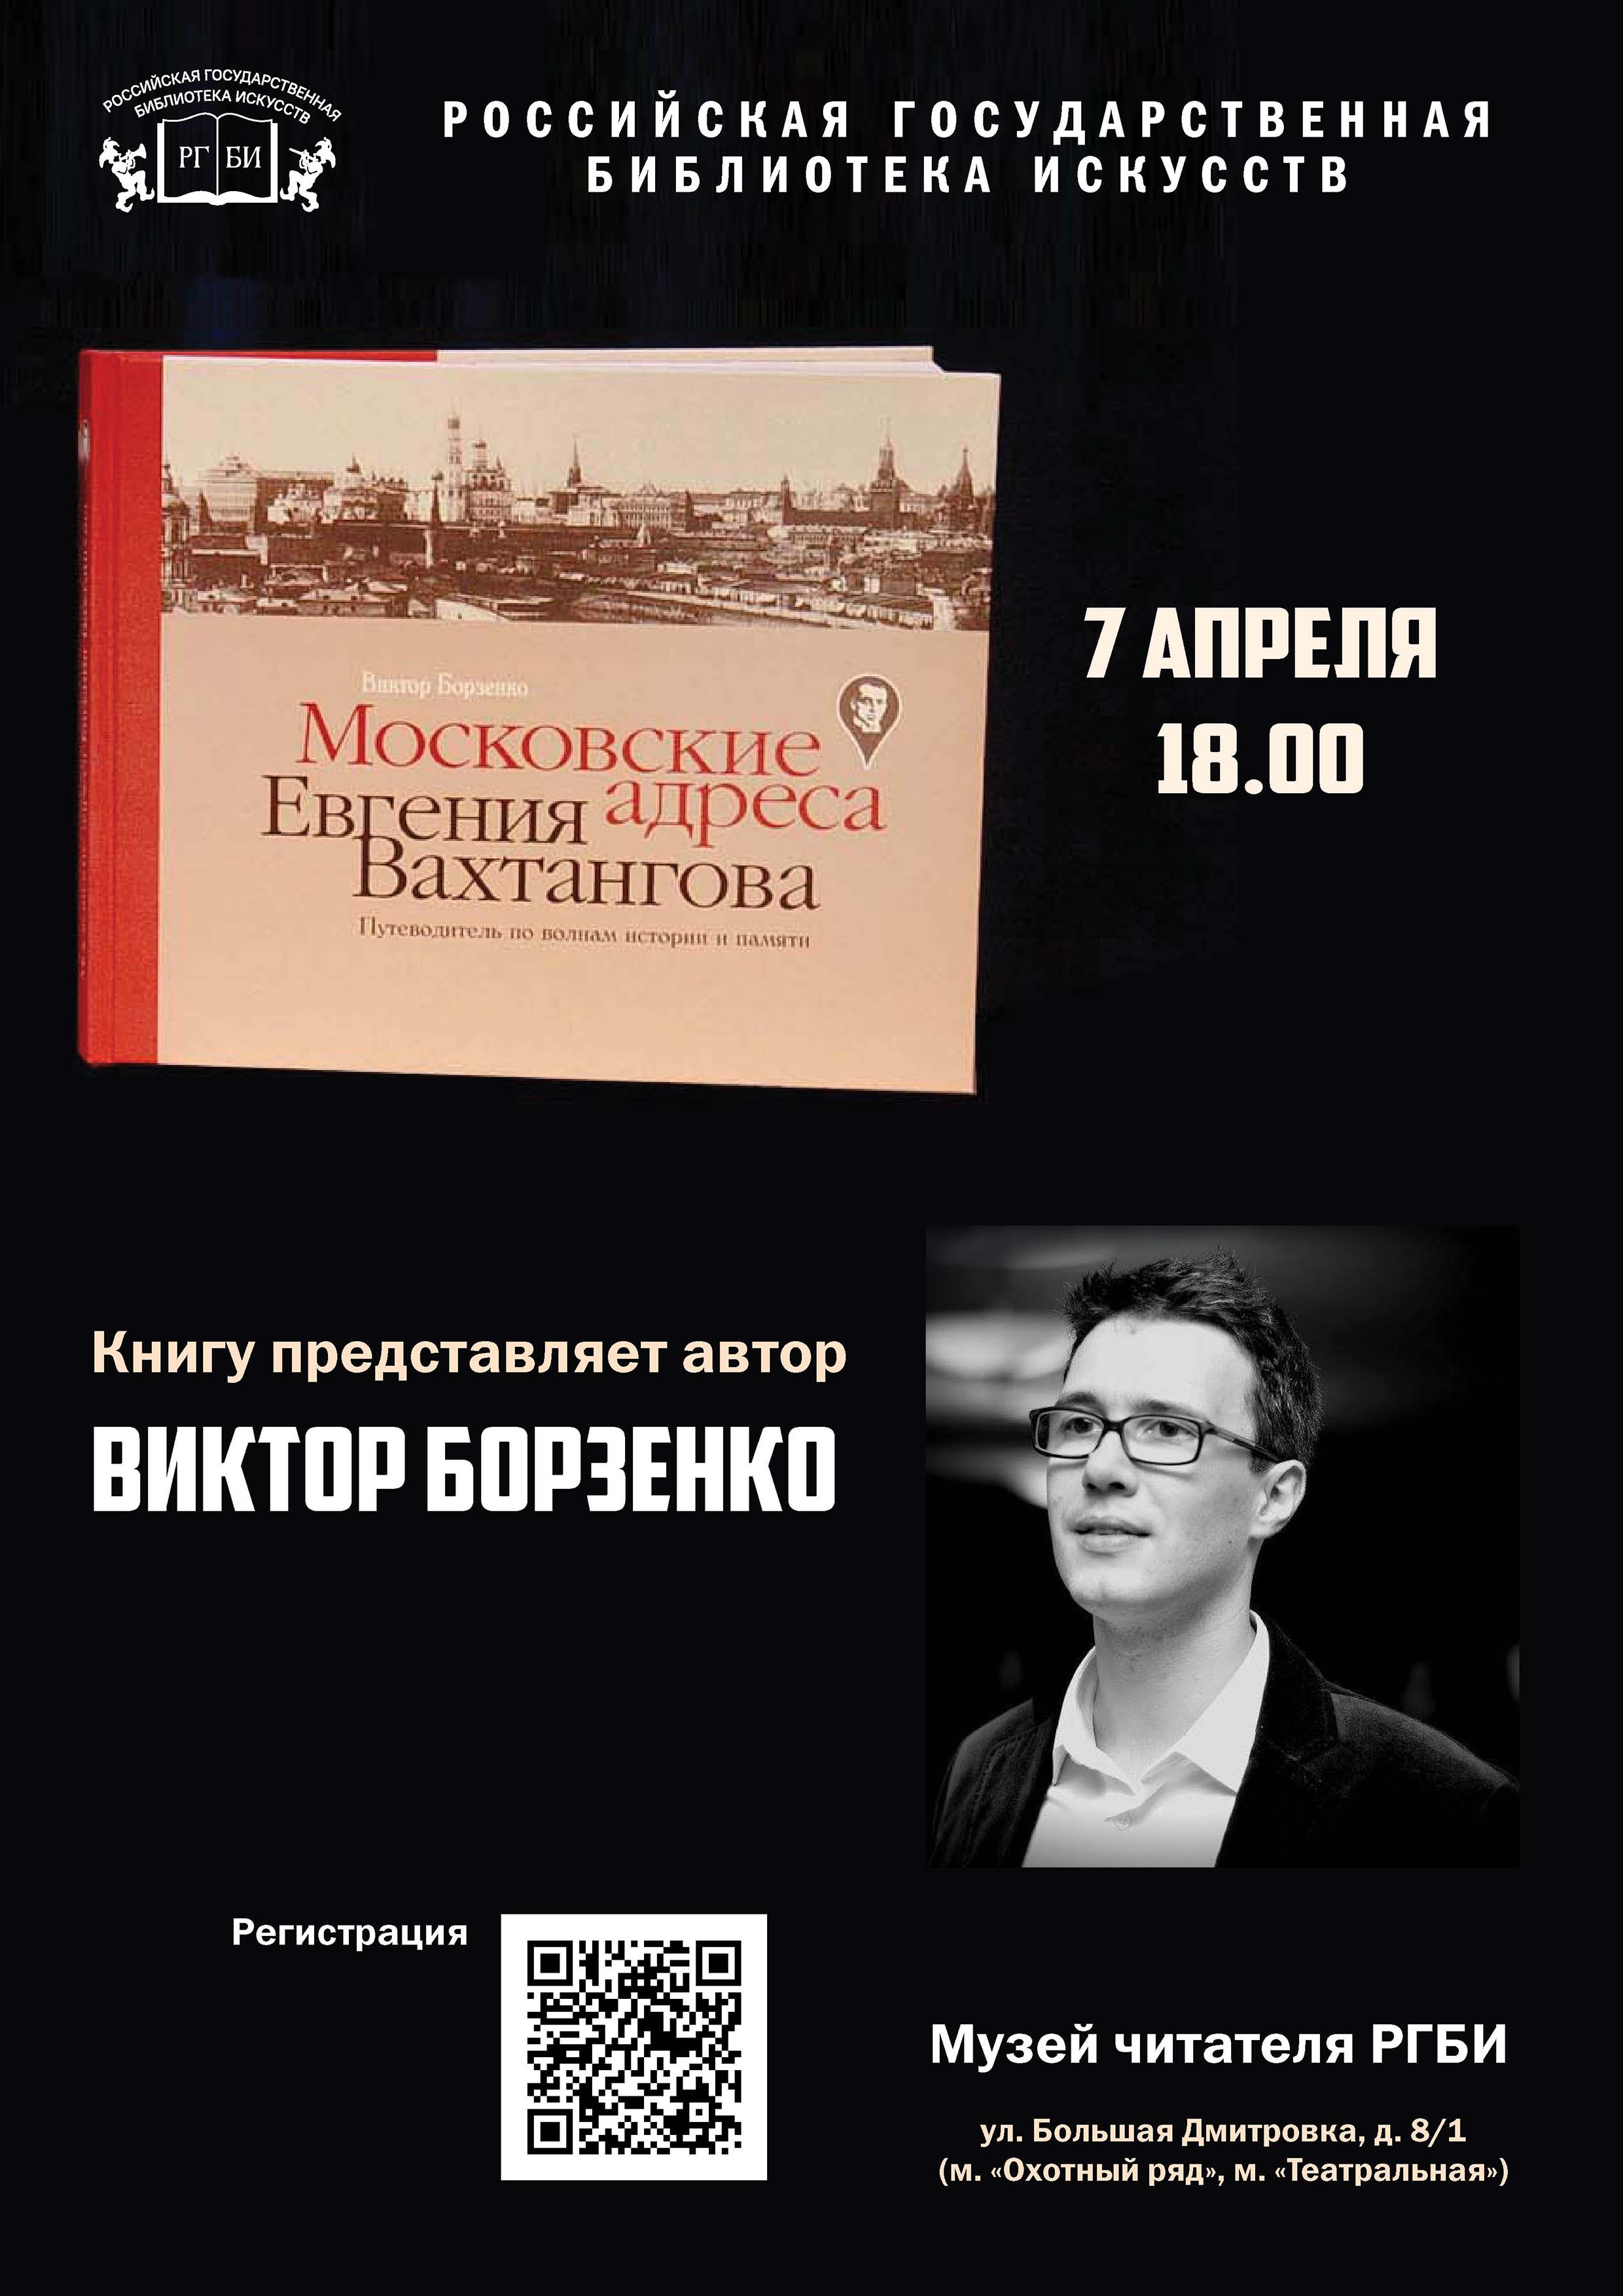 7 апреля в РГБИ состоится презентация книги 